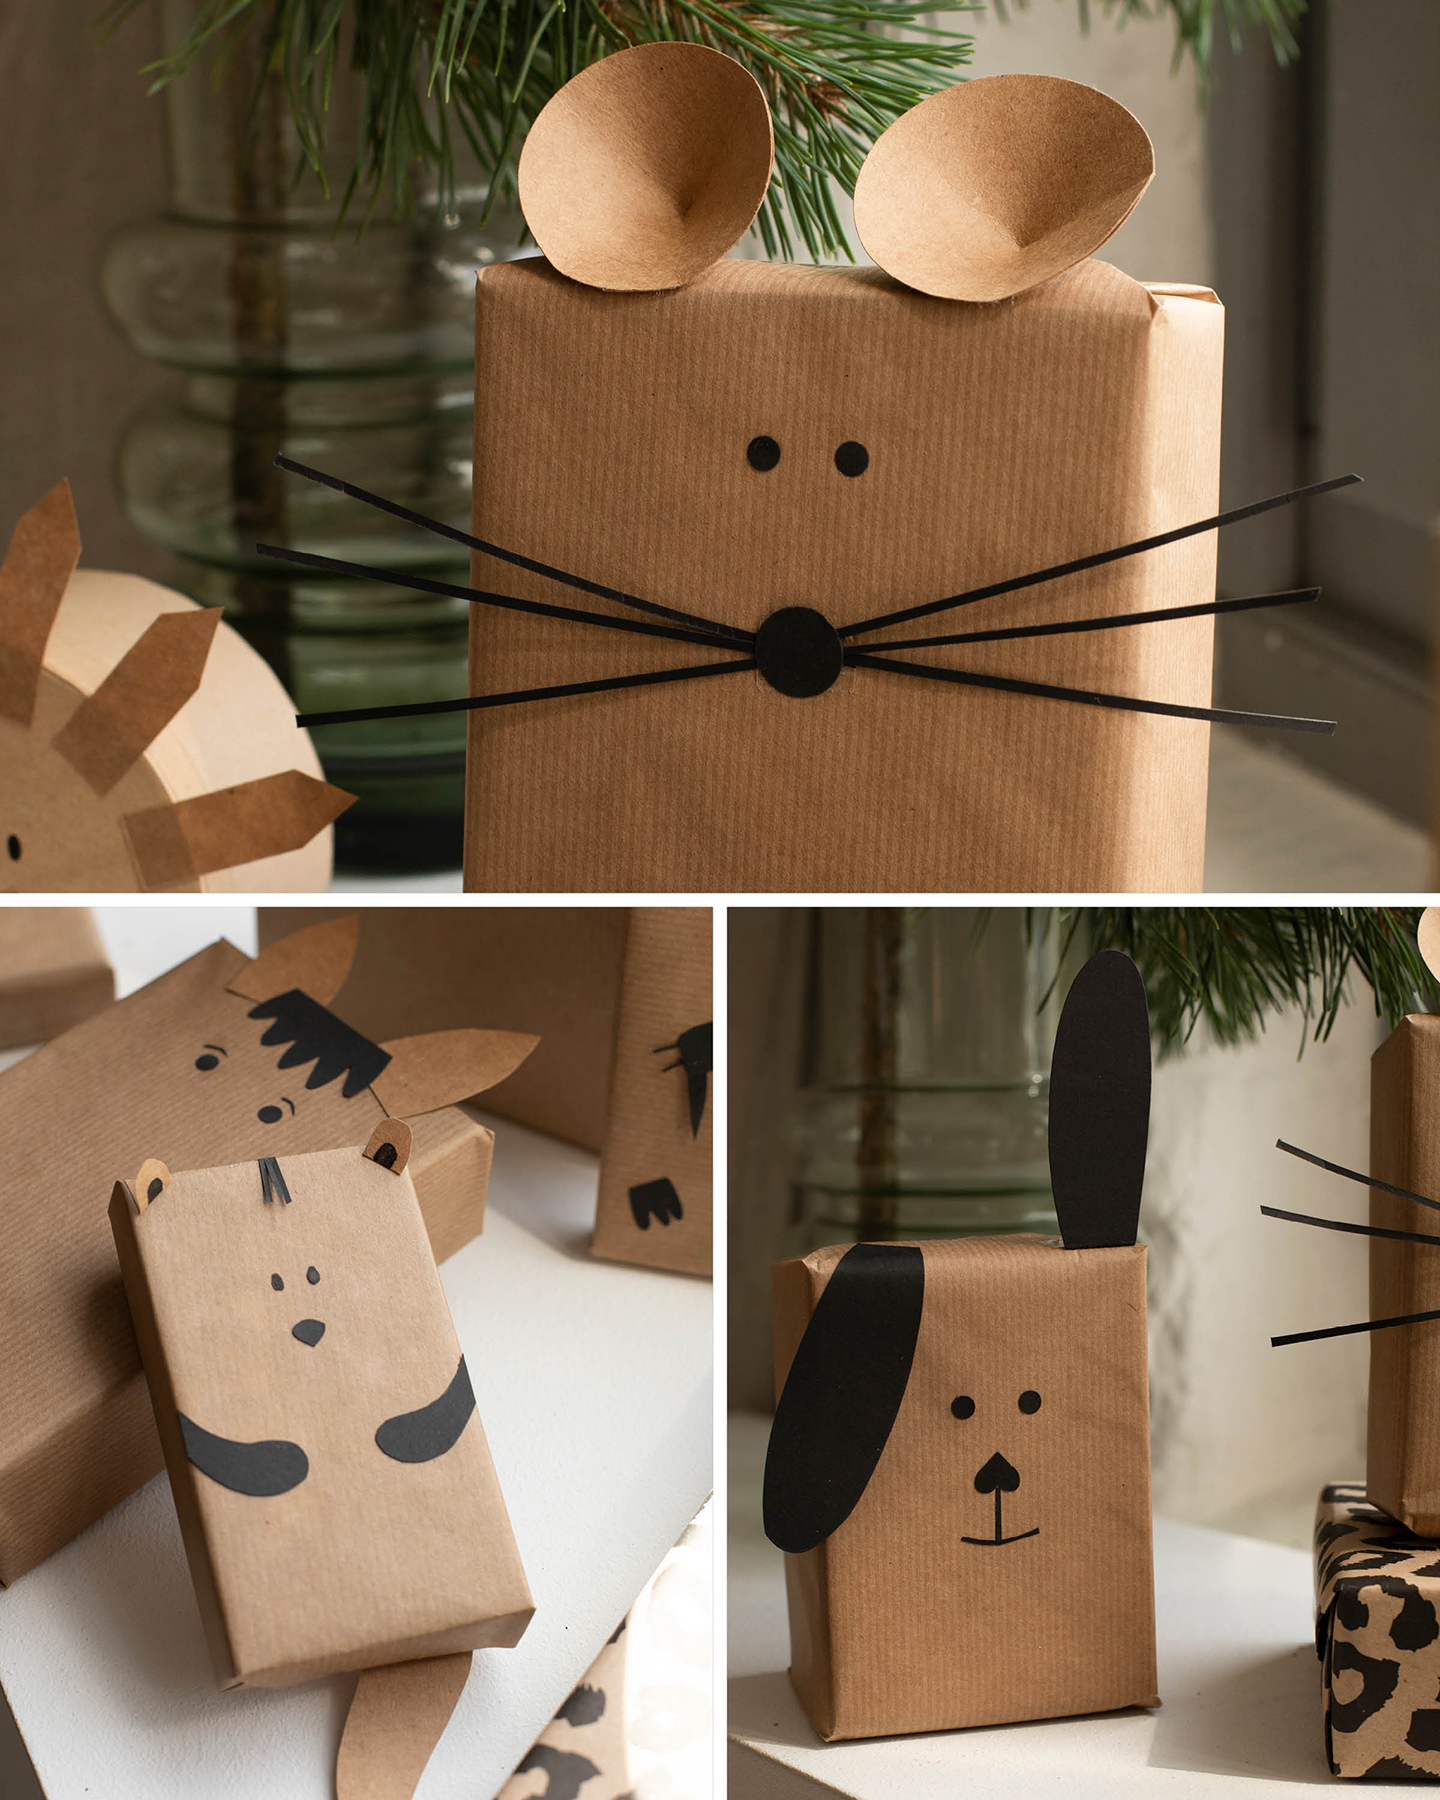 Maus, Otter und Hund gebasteltes aus Pappkartons. Adventskalender für Kinder selber basteln.